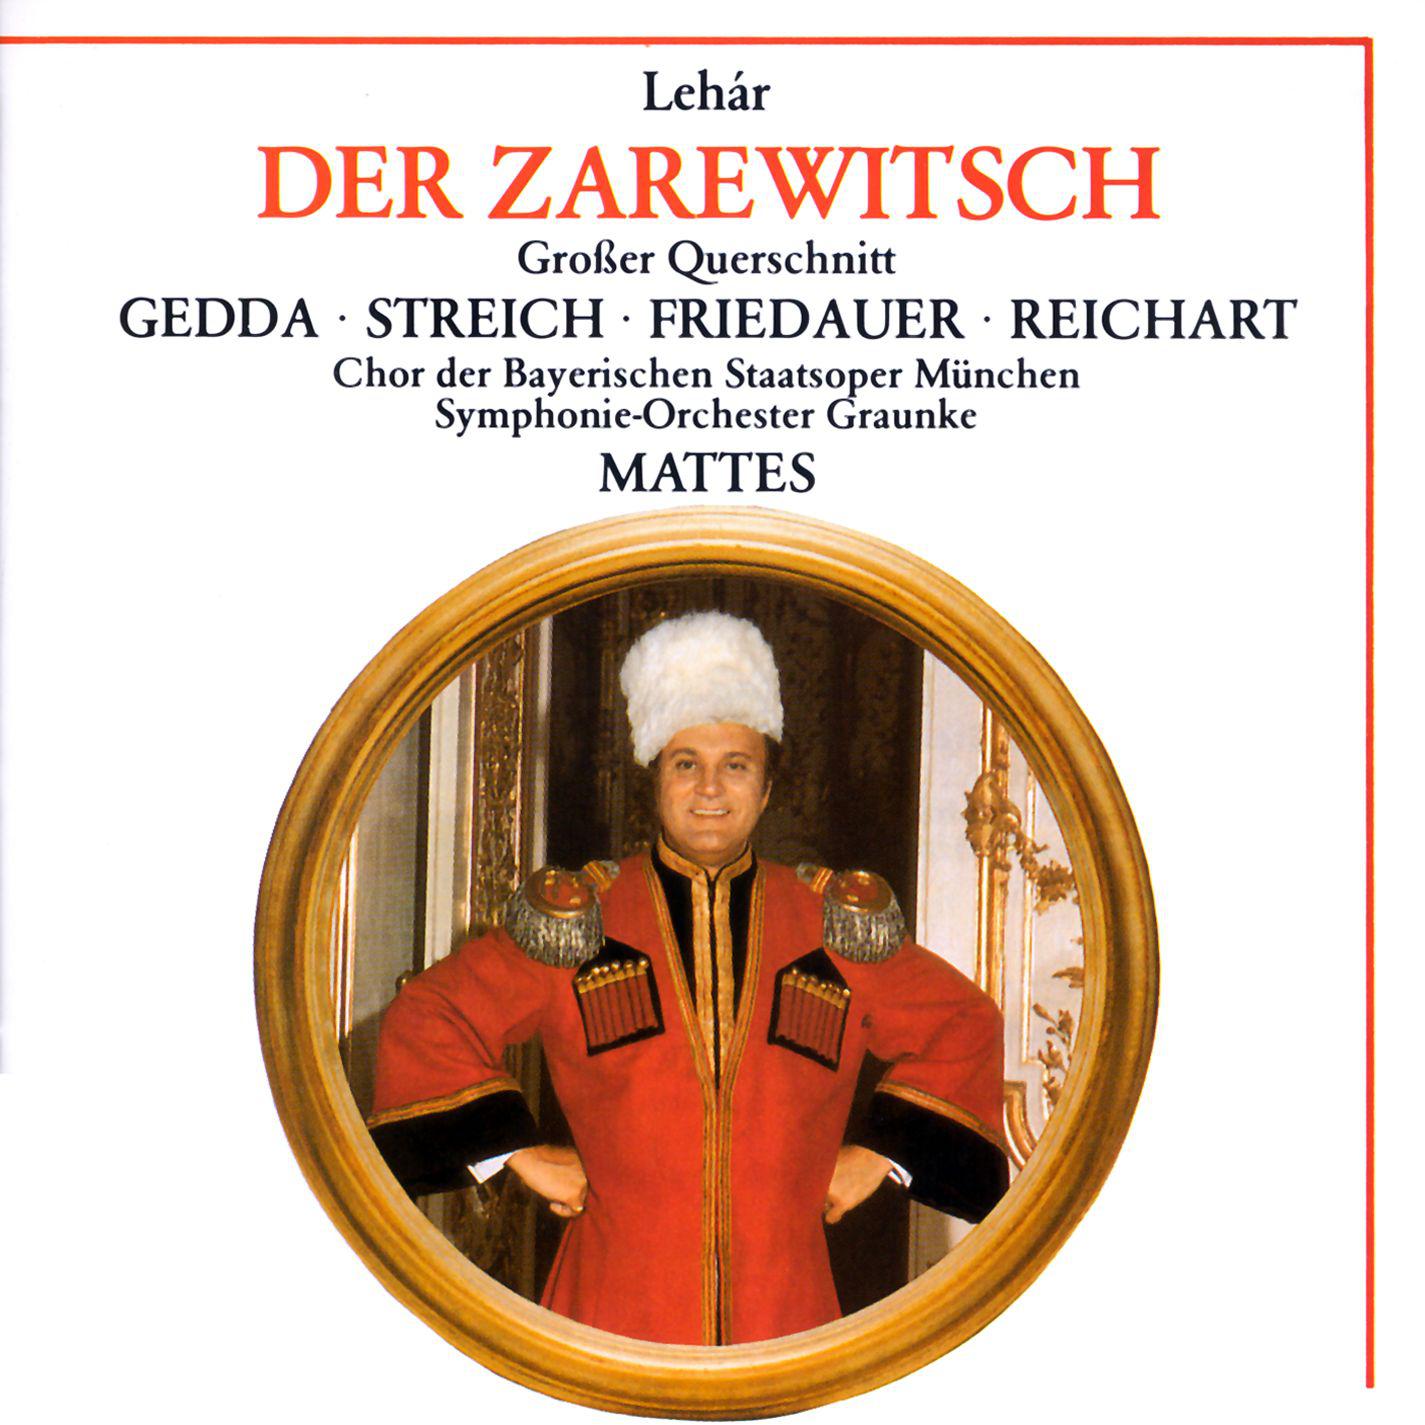 Rita Streich - Der Zarewitsch · Highlights (1988 Remastered Version), Erster Akt:Dich nur allein nenne ich mein - Schaukle, Liebchen, schaukle (Iwan -Mascha)